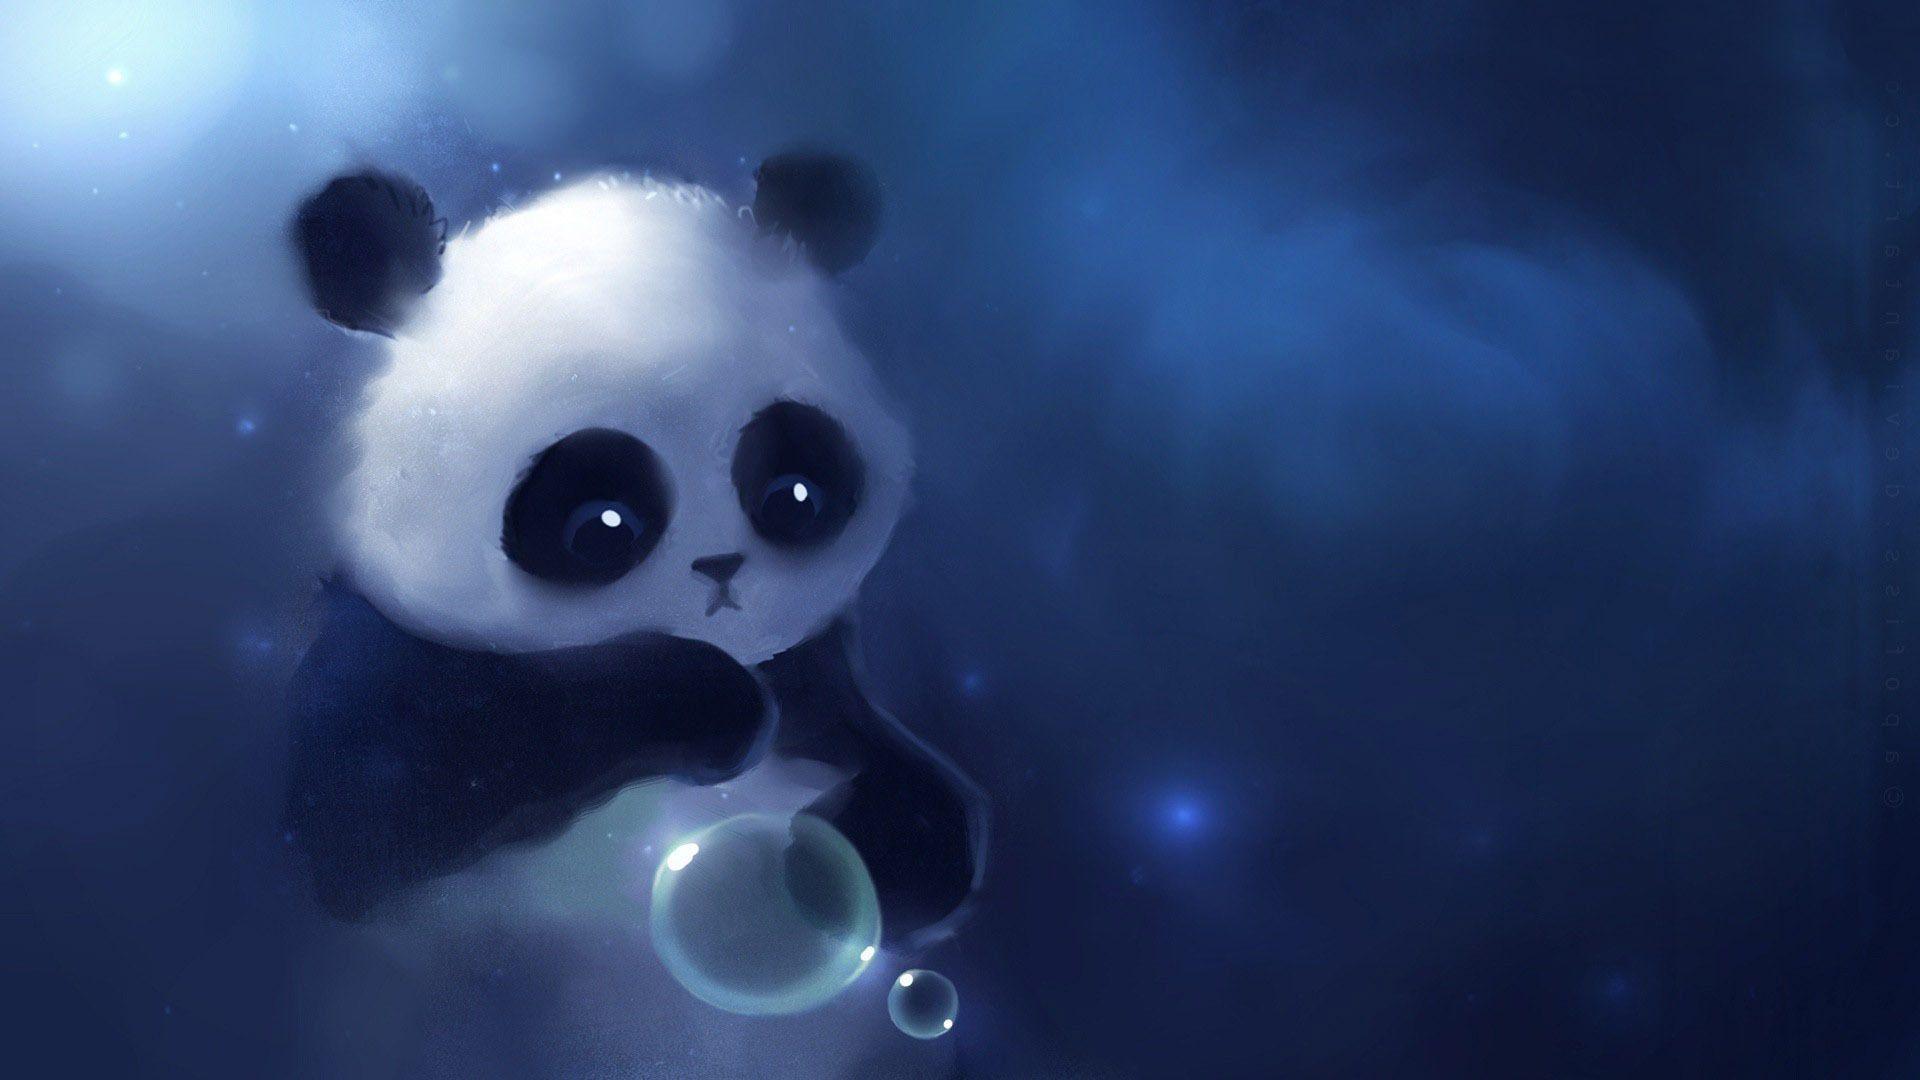 Free Download Cute Panda Wallpaper Tumblr. Wallpaper. Dark